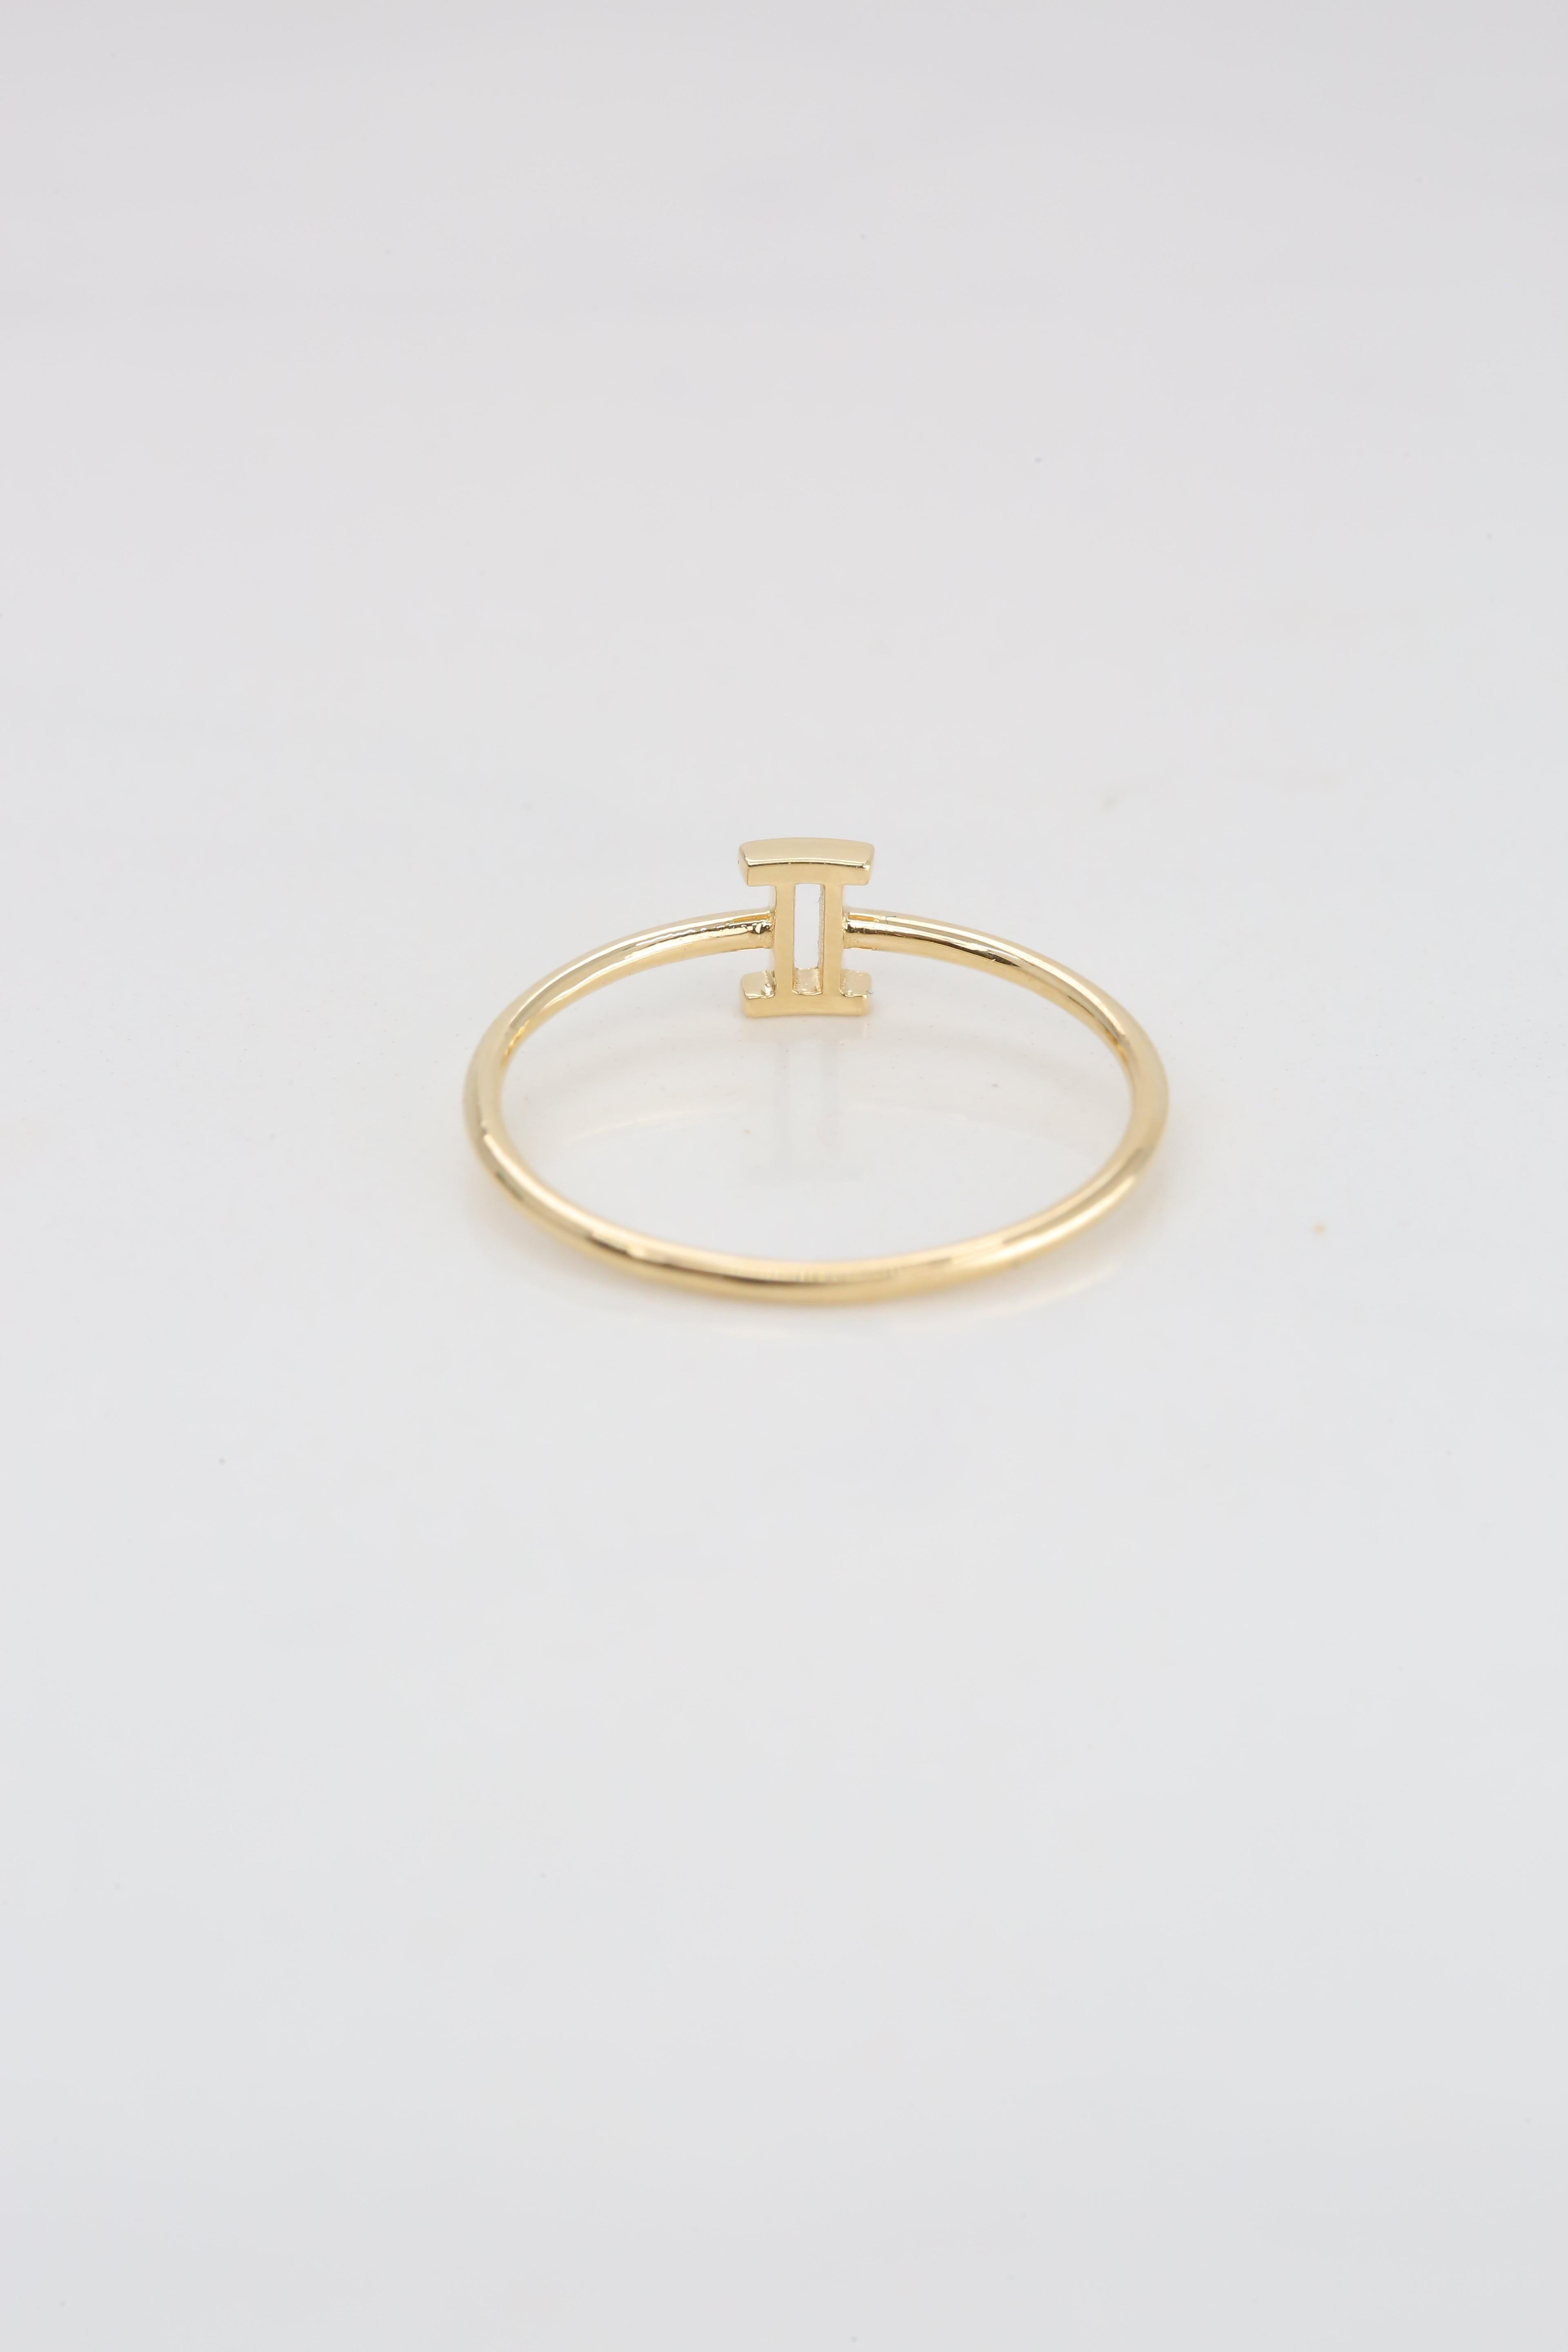 For Sale:  14K Gold Gemini Zodiac Ring, Gemini Sign Zodiac Ring 8